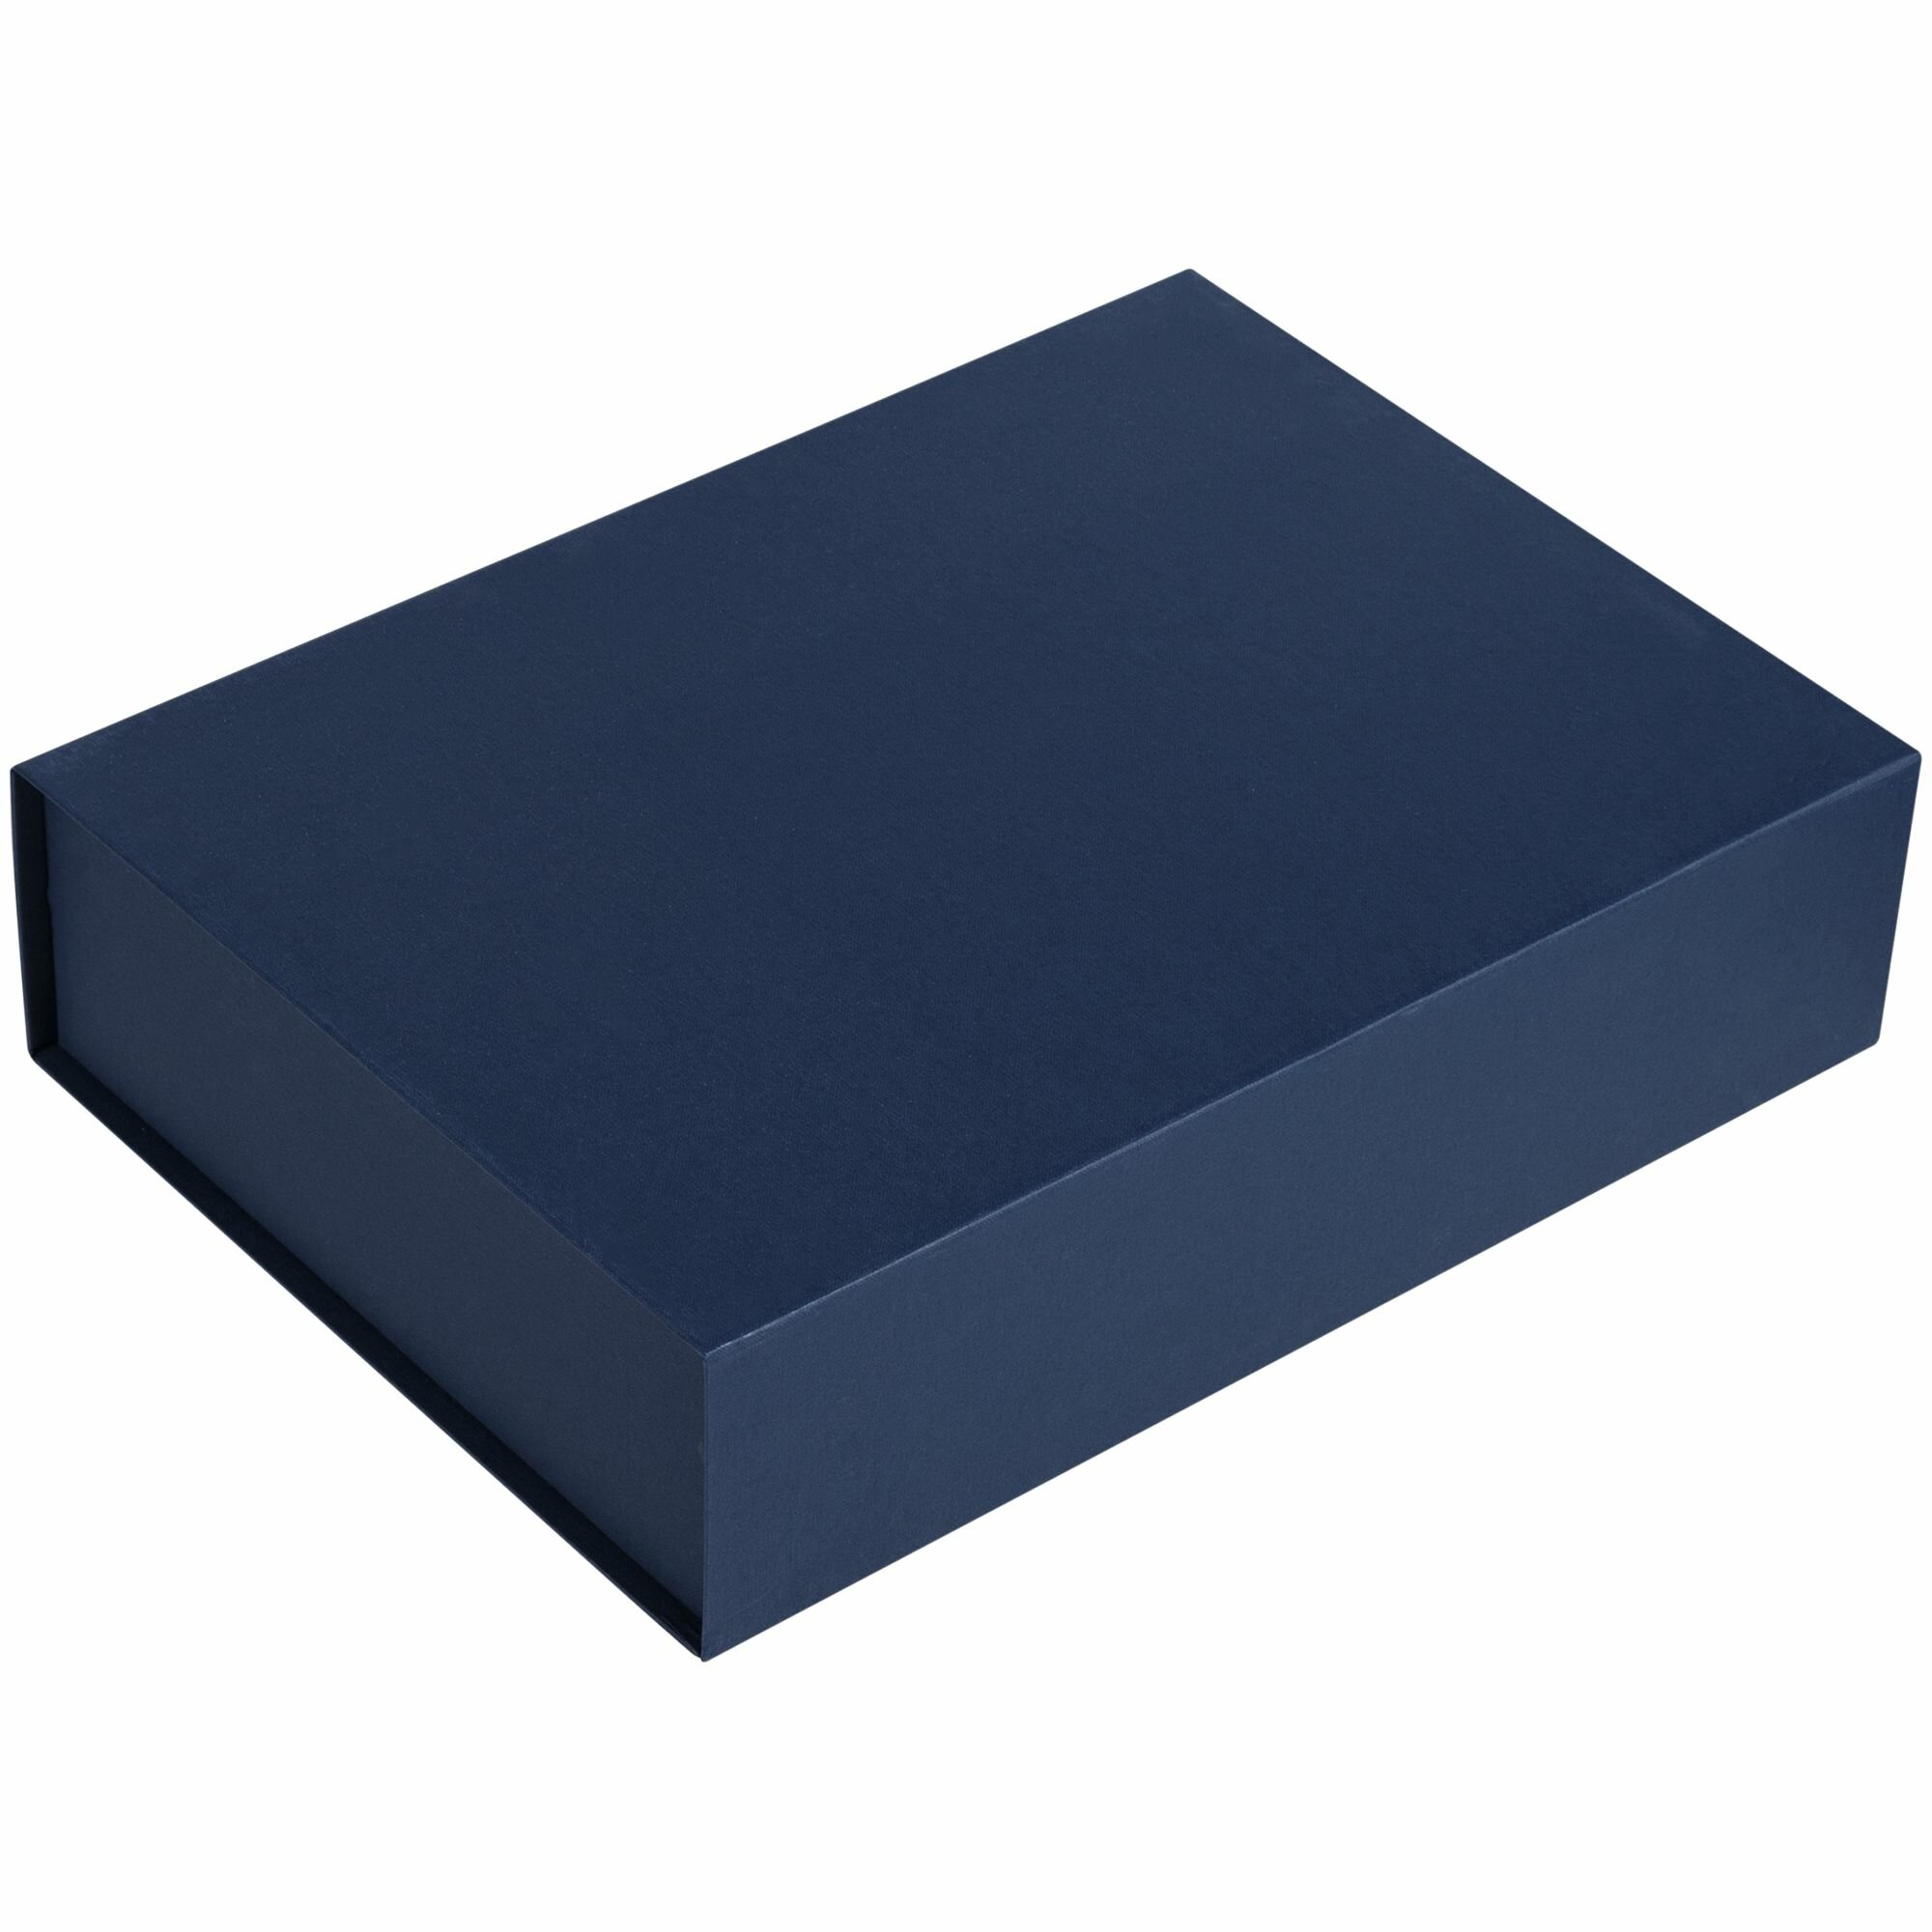 Большая подарочная коробка. Синяя. 40х30х10 см.